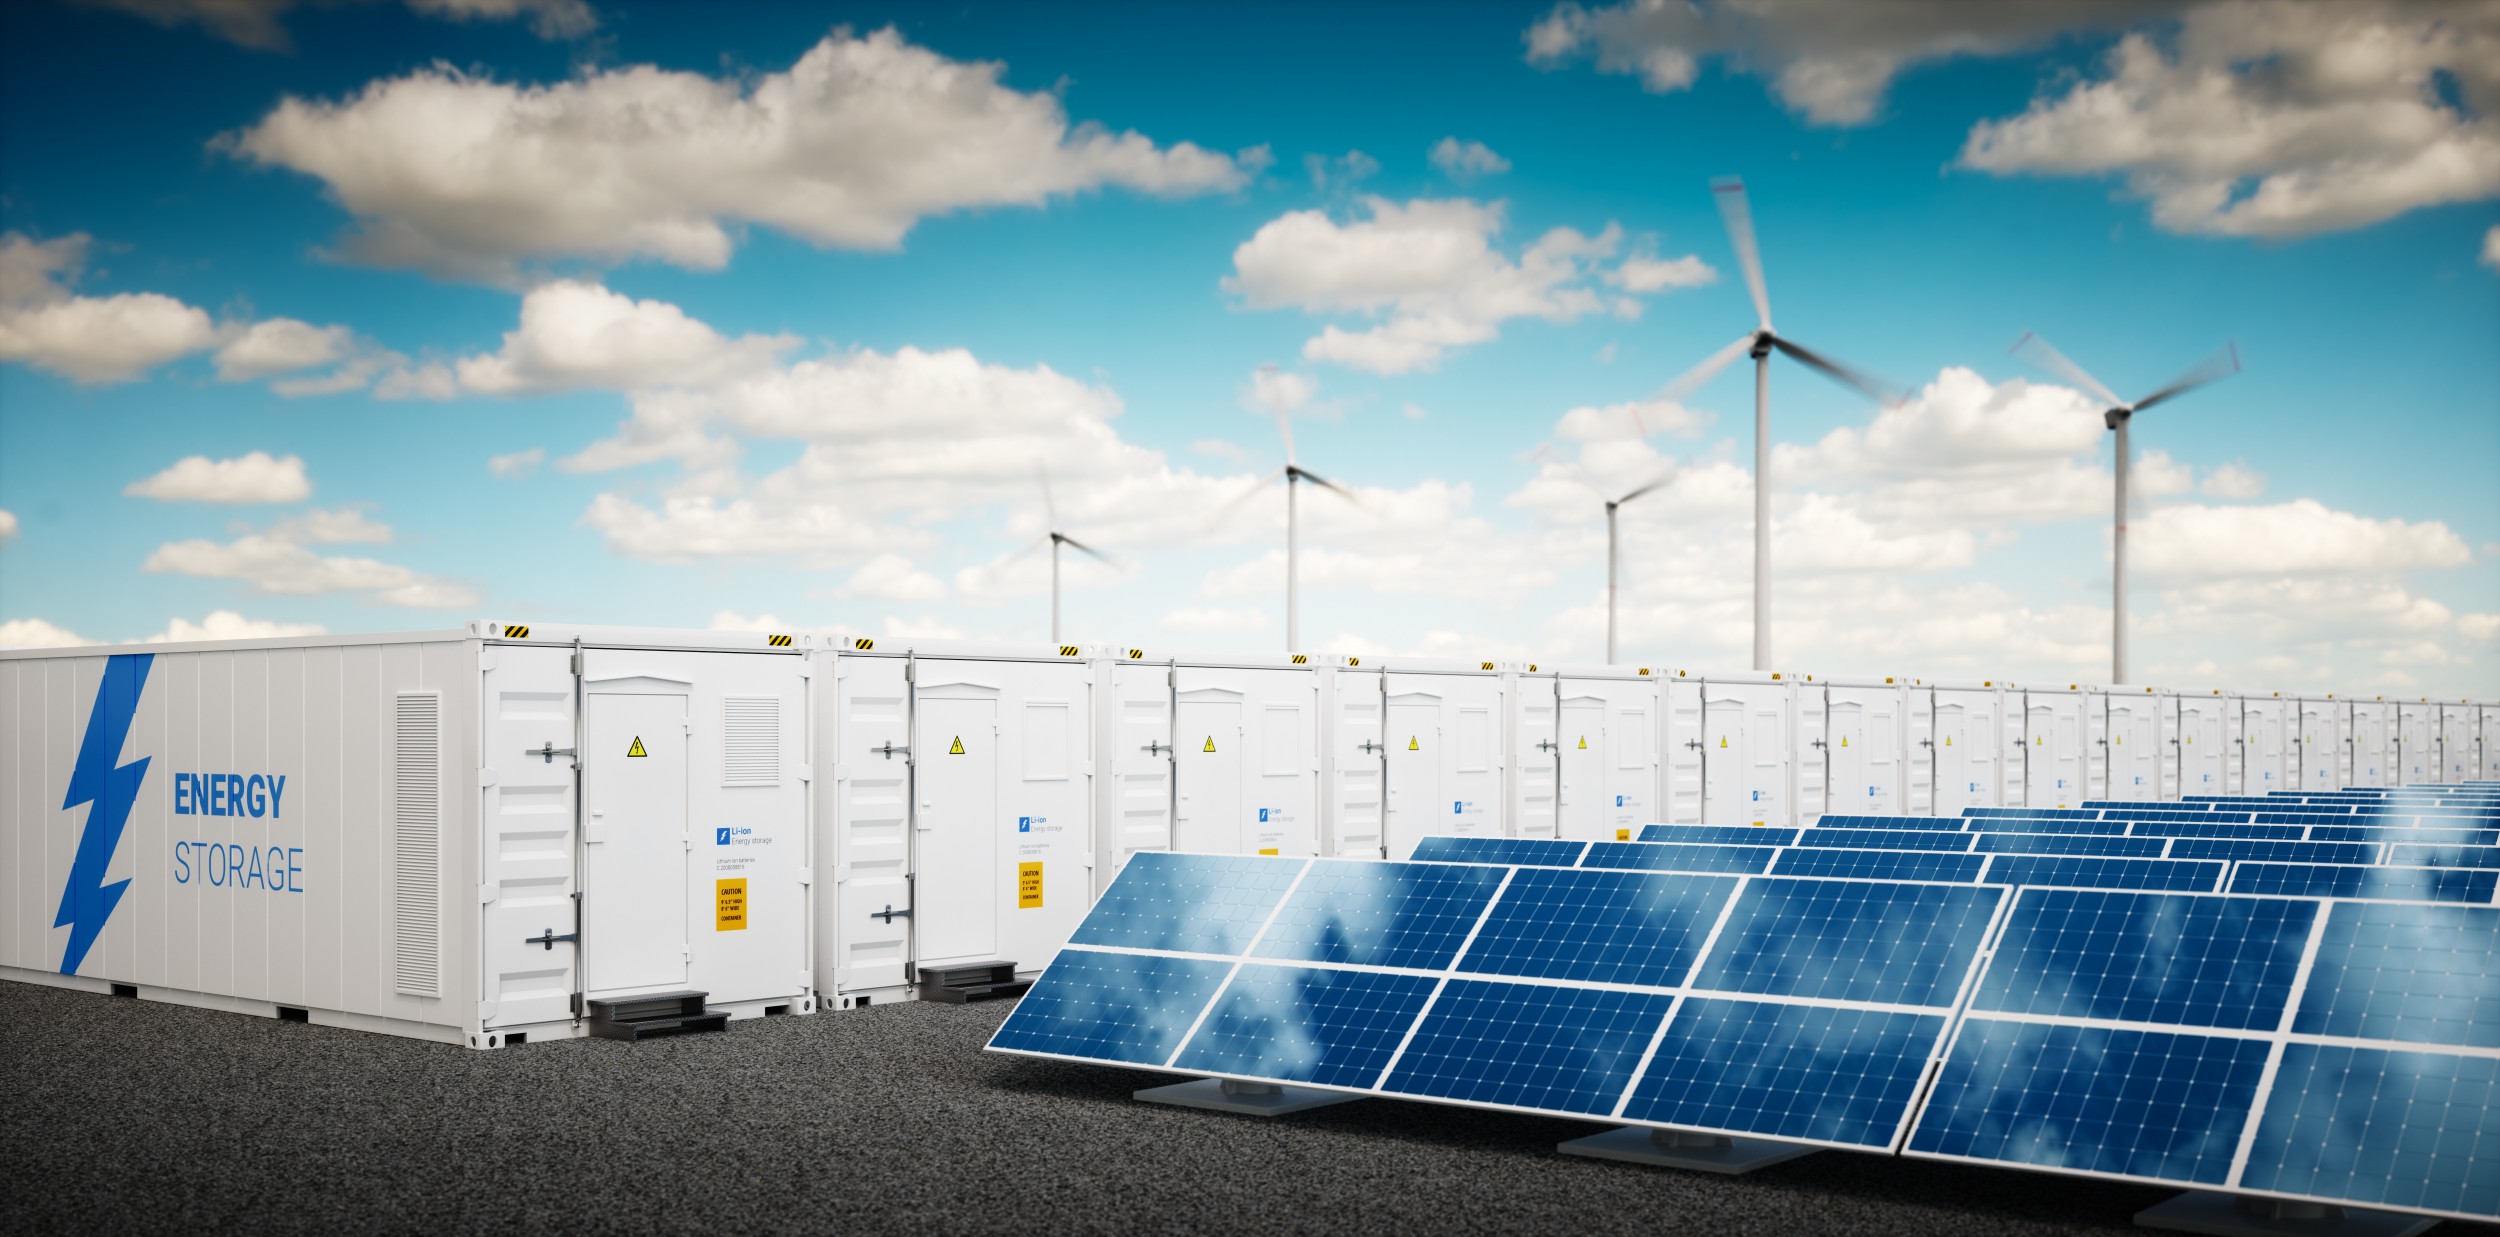 Dezentral erzeugte Energie aus Sonne oder Wind benötigt lokale Speicherkapazitäten in stationären Batterien. Dabei helfen die neu entwickelten Batteriesysteme.